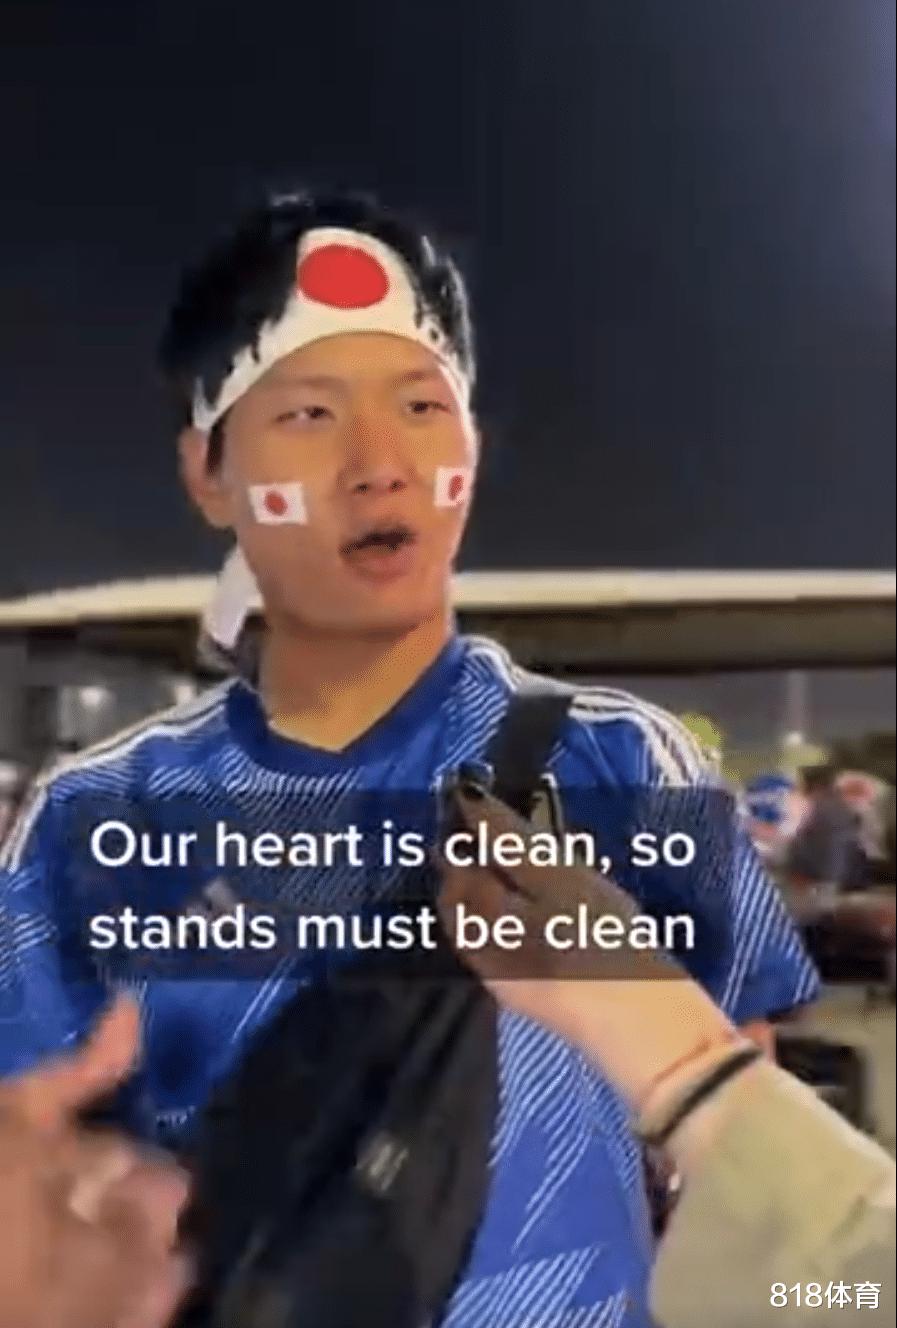 有点装! 日本球迷谈赛后捡垃圾: 我们的心是干净的 所以看台必须干净(4)